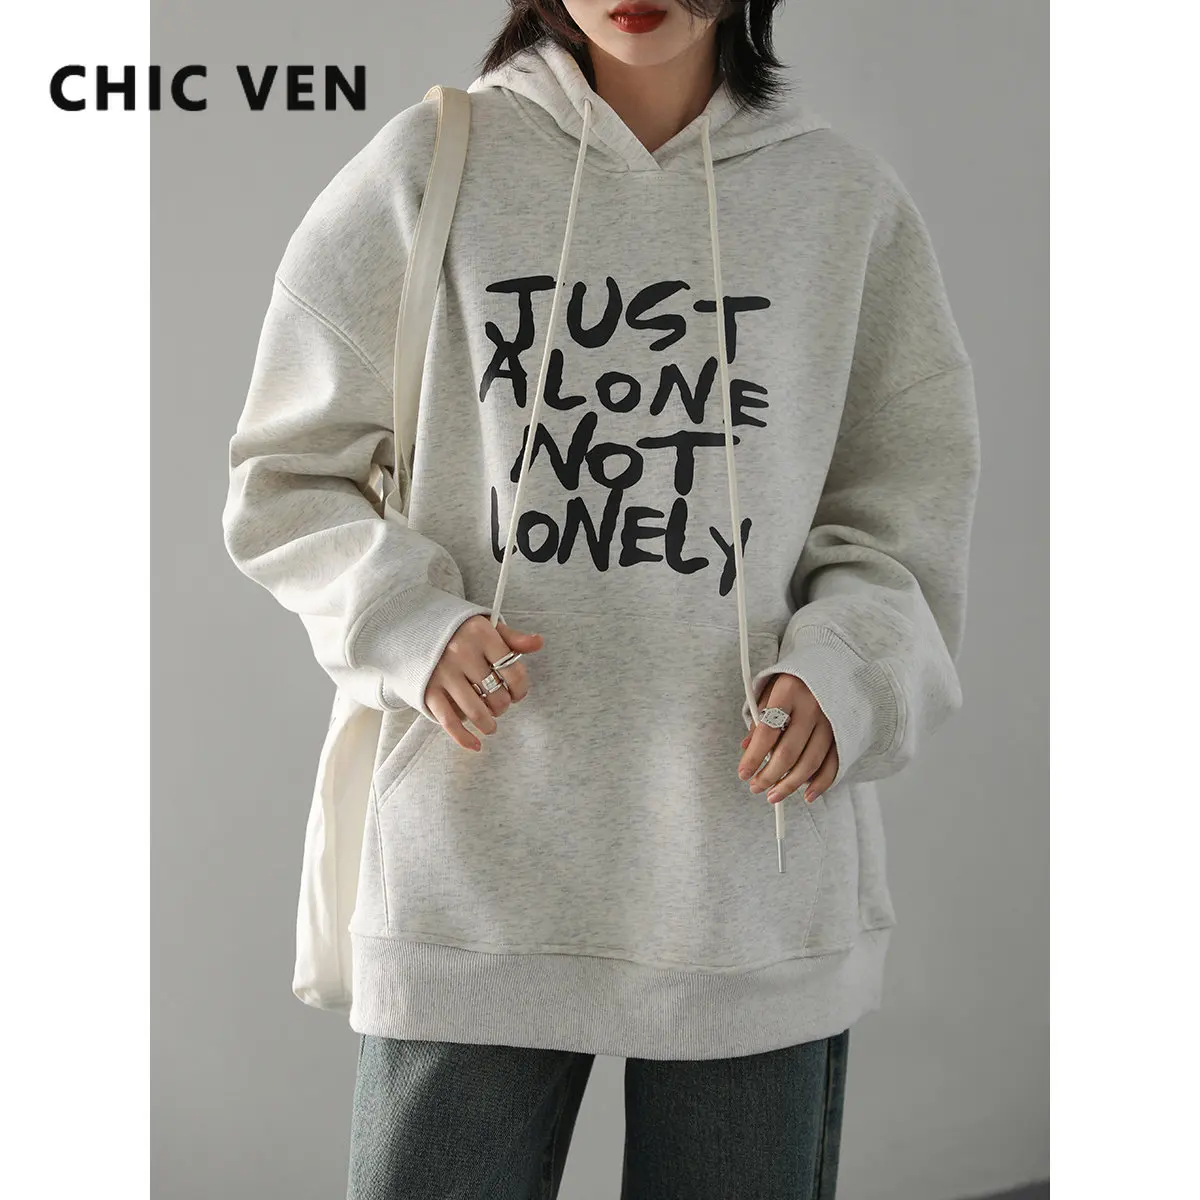 CHIC VEN Women Sweatshirts Loose Hoodies Streetwear Casual Letter